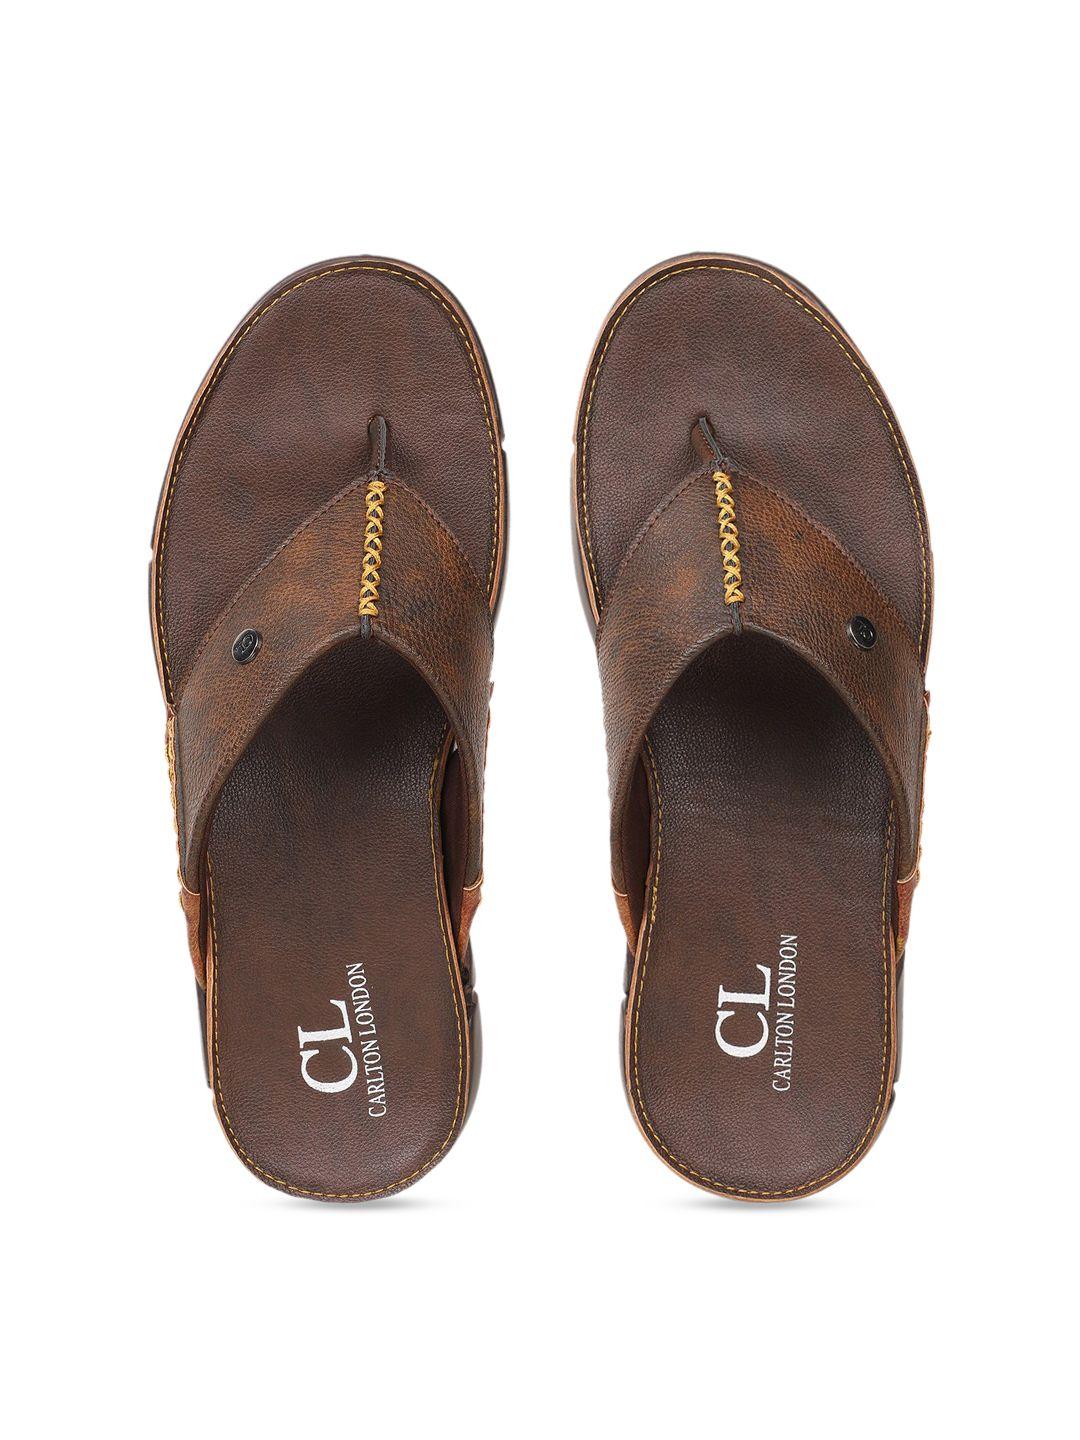 carlton-london-men-brown-comfort-sandals